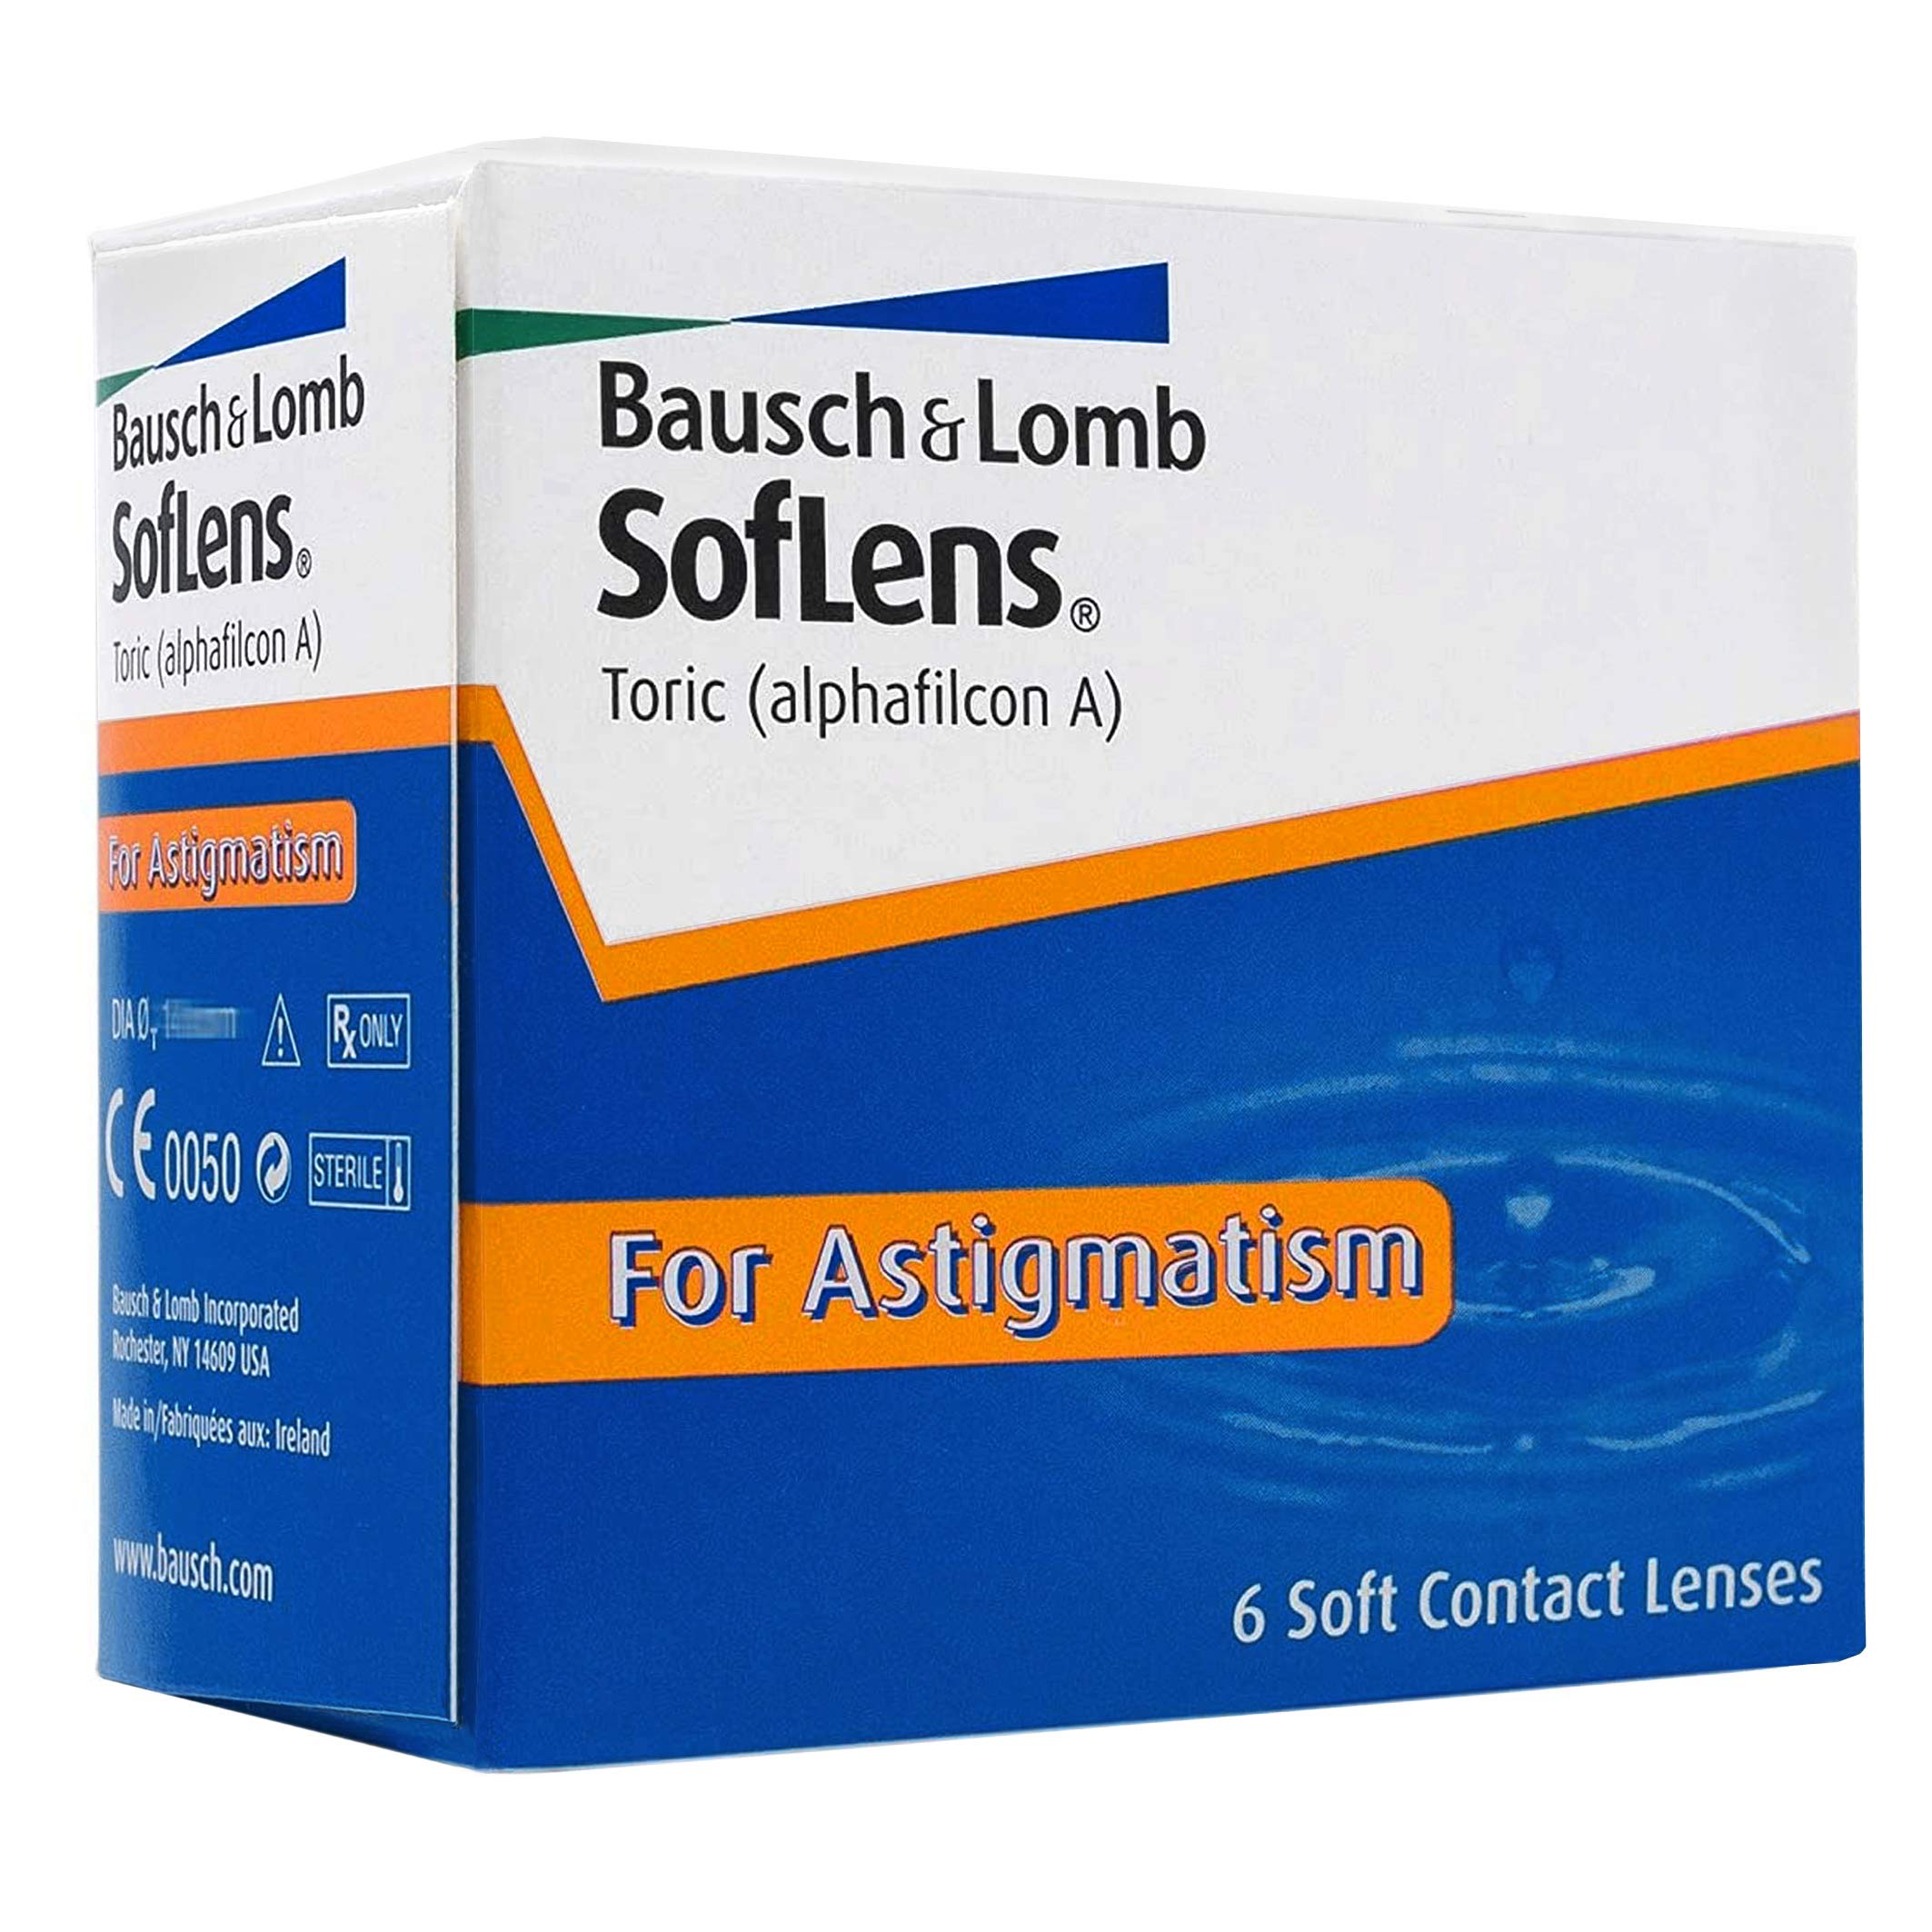 Bausch + Lomb SofLens Toric Monatslinsen, torische Kontaktlinsen, weich, 6 Stück BC 8.5 mm / DIA 14.5 / CYL -2.25 / Achse 60 / -4 Dioptrien